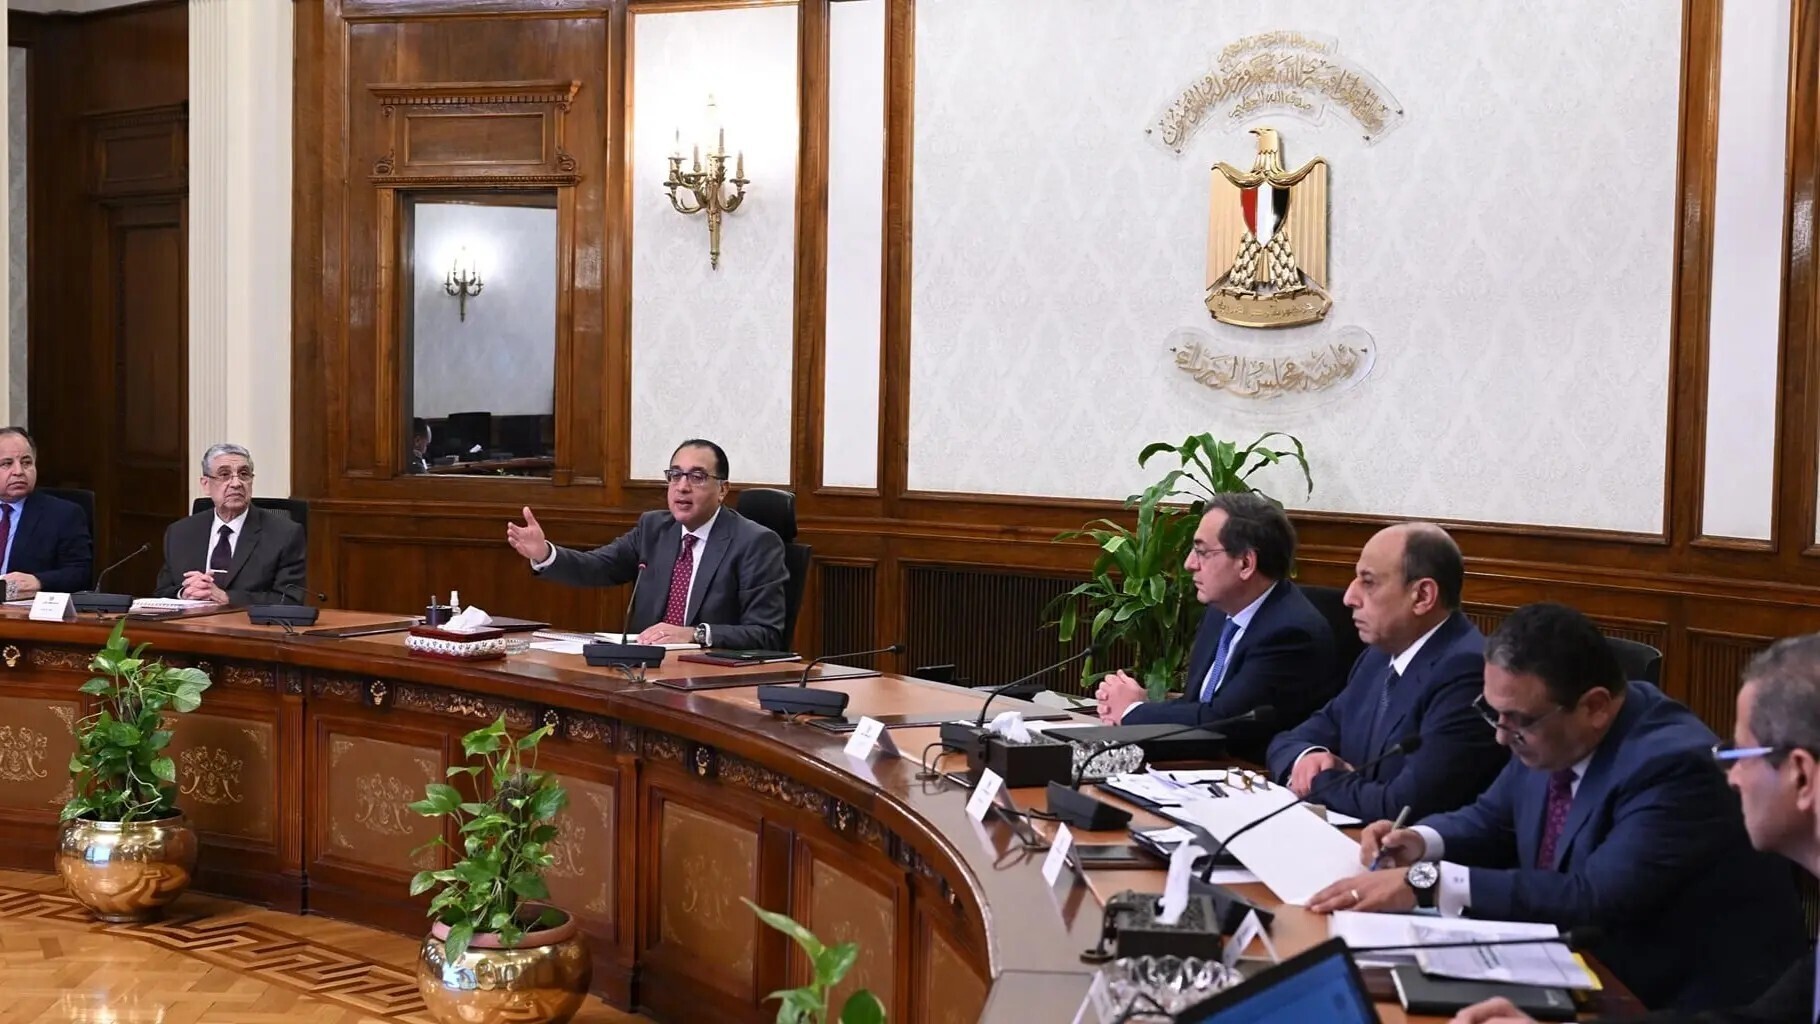 ماذا يريد المصريون من الحكومة الجديدة؟.. خبراء يتحدثون لـRT عن أهم المطالب